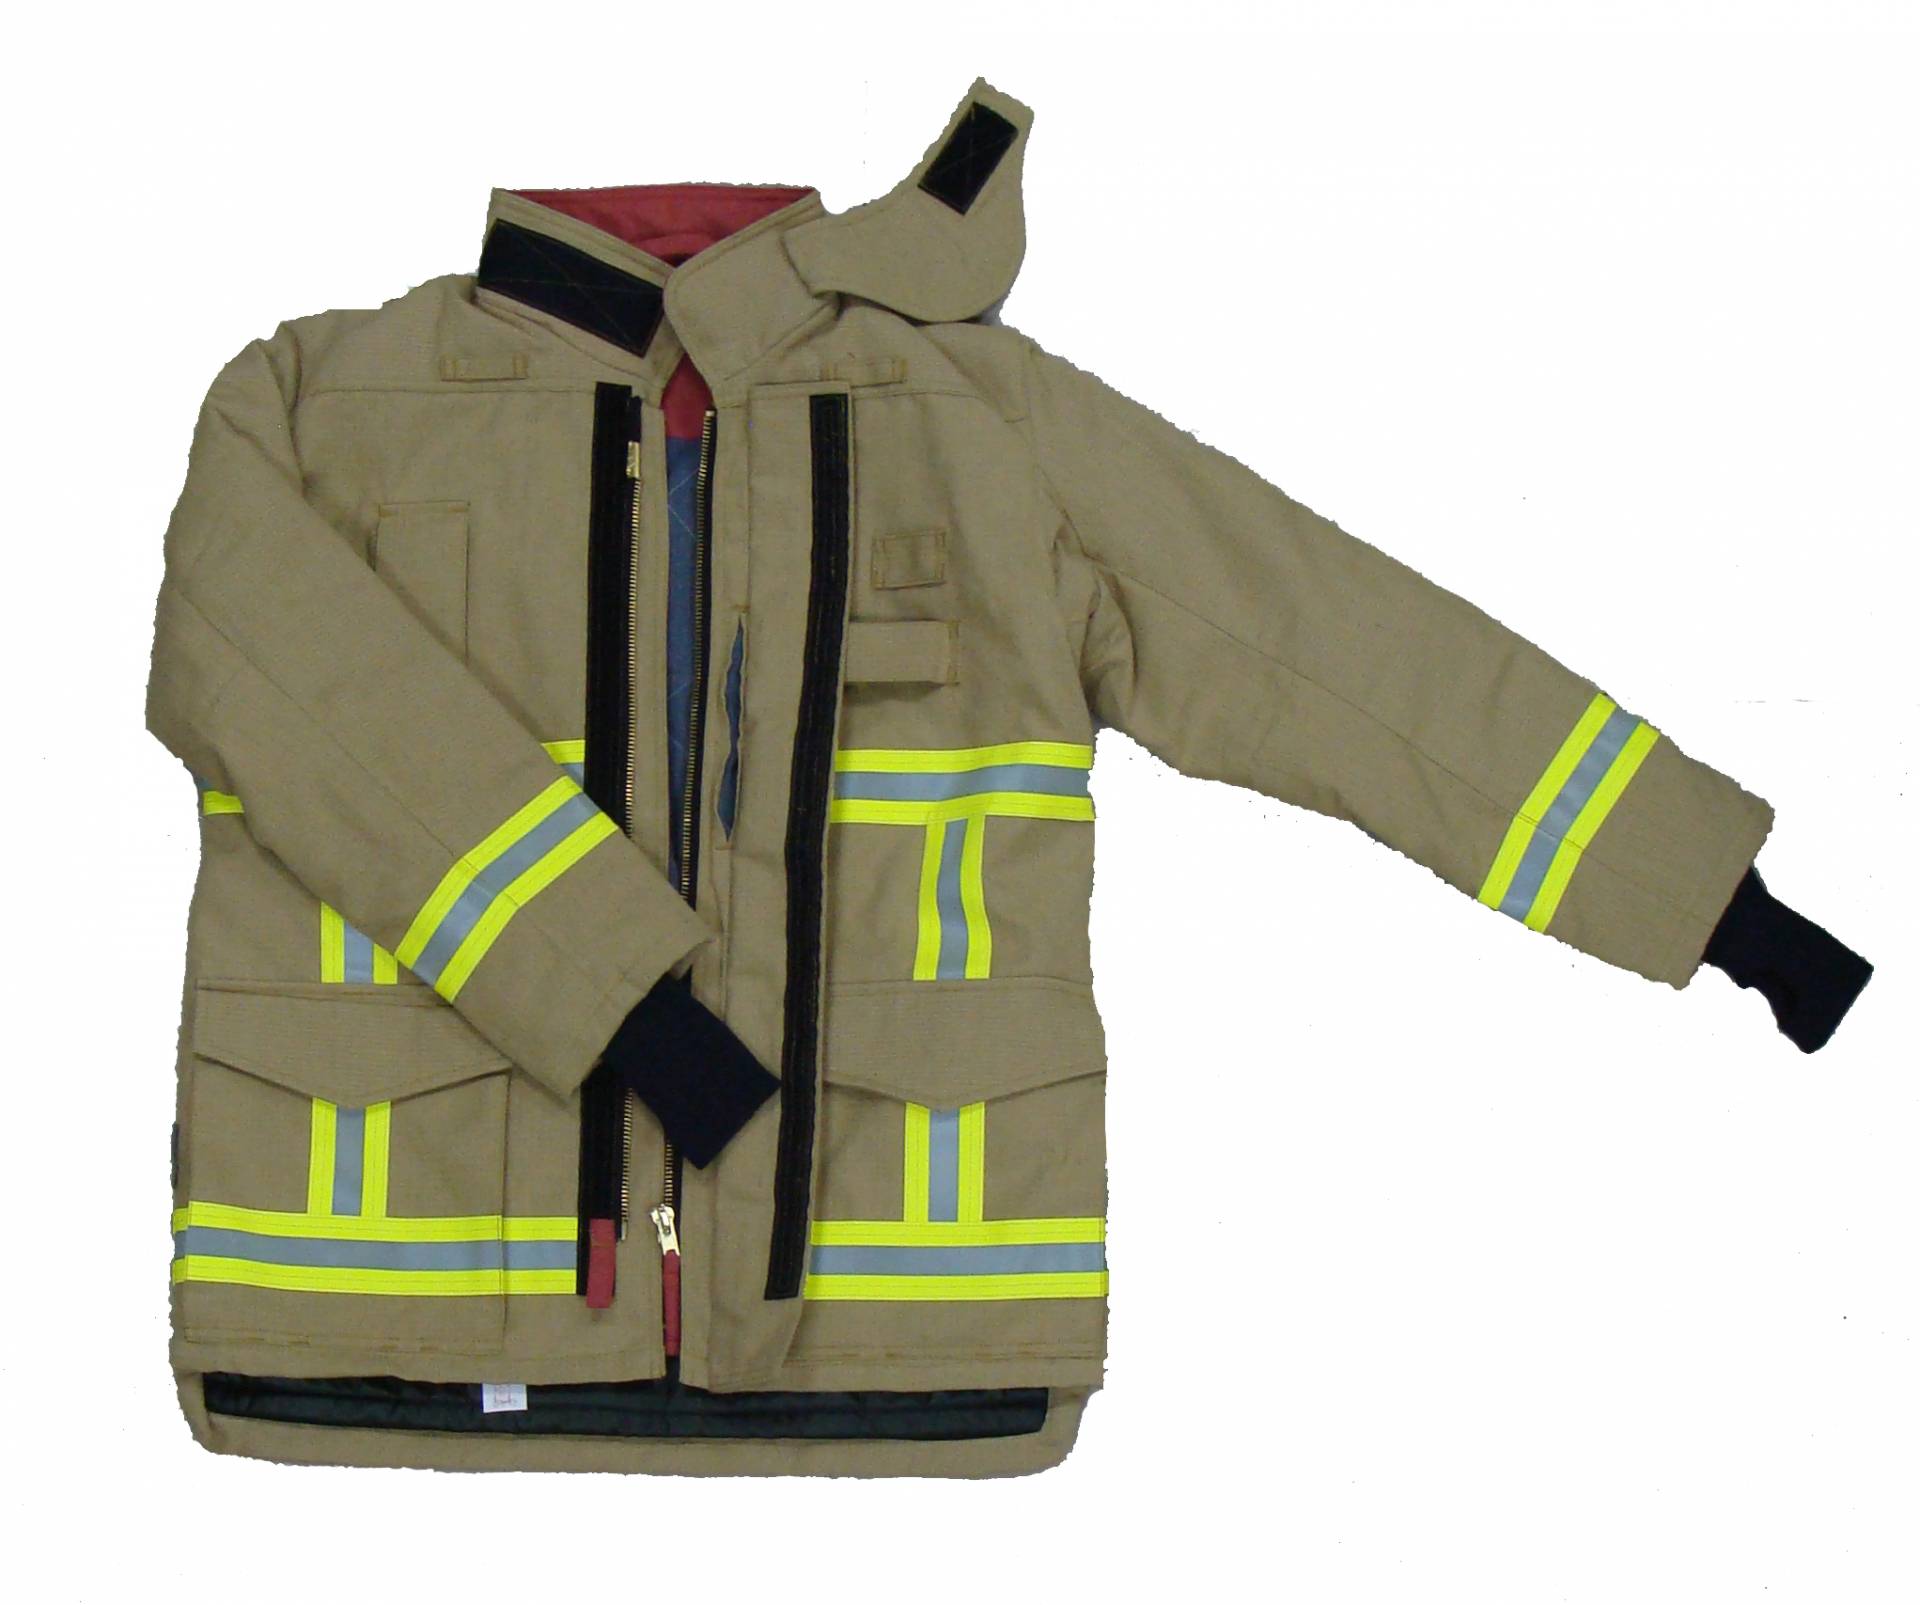 بدلة مكافحة الحرائق ذات الطراز الأوروبي 701-G الممتازة ، EN469 المستوى 2 ، شهادة CE ، واجب ثقيل لحماية رجال الإطفاء